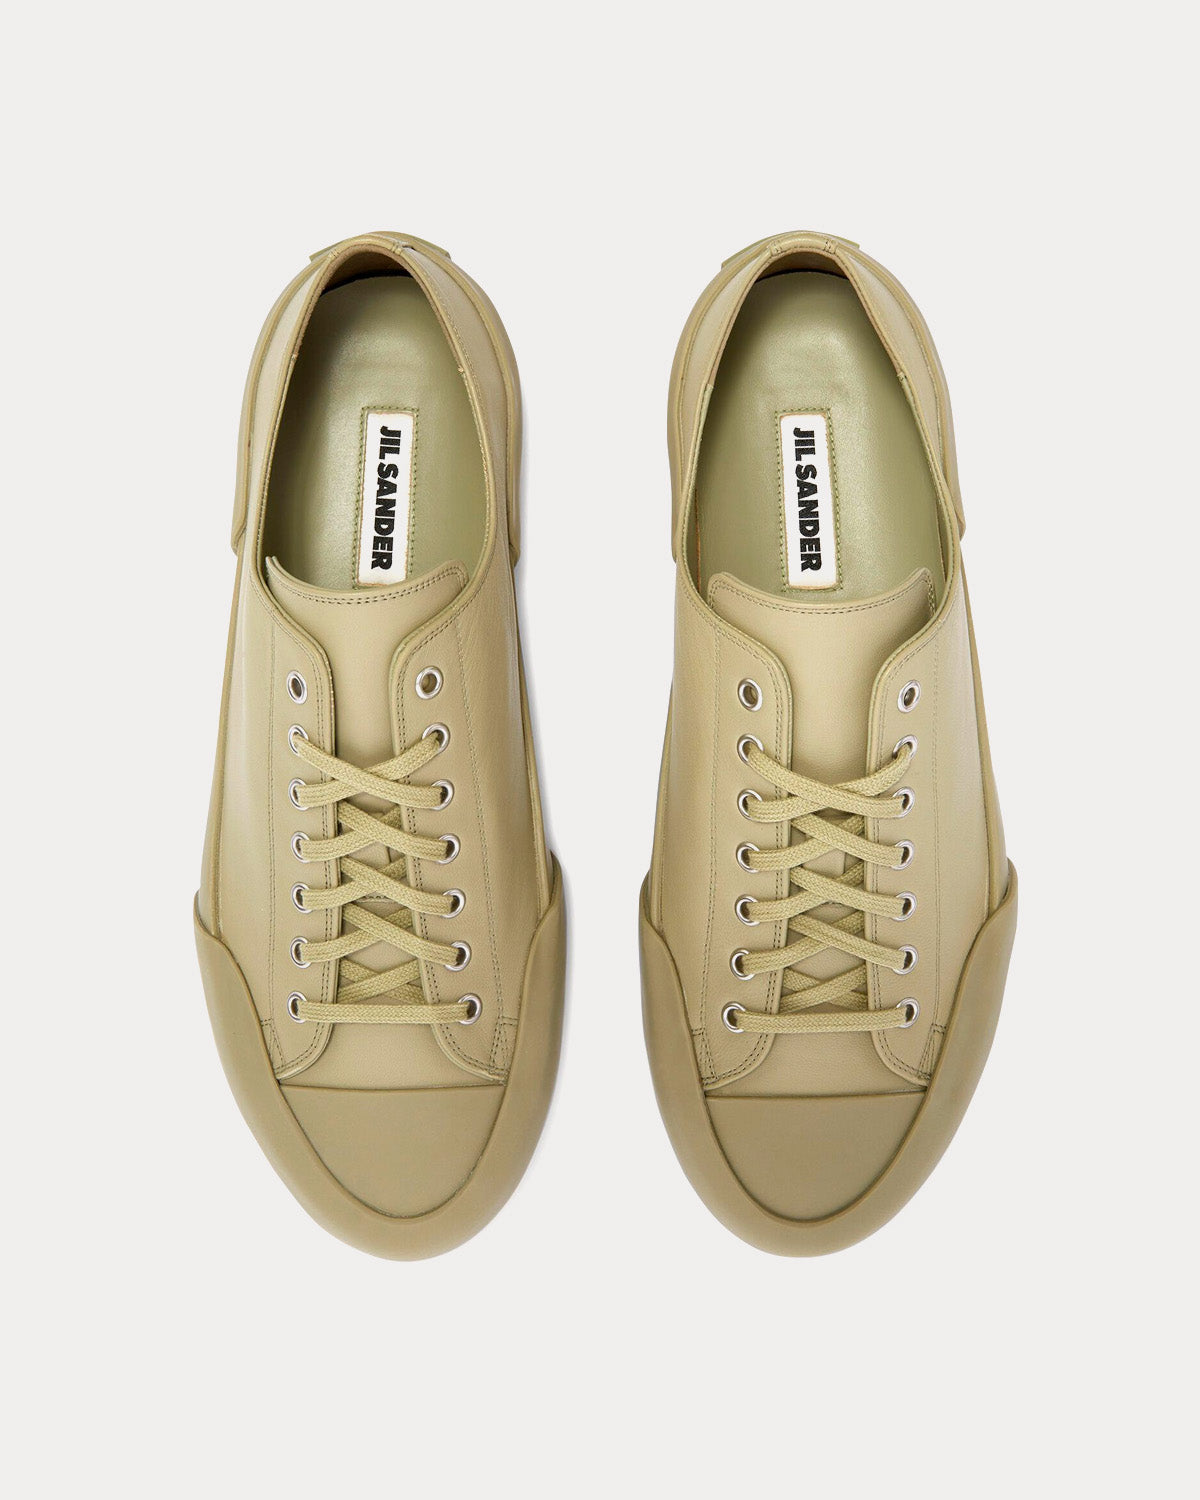 Jil Sander - Leather Pastel Green Low Top Sneakers